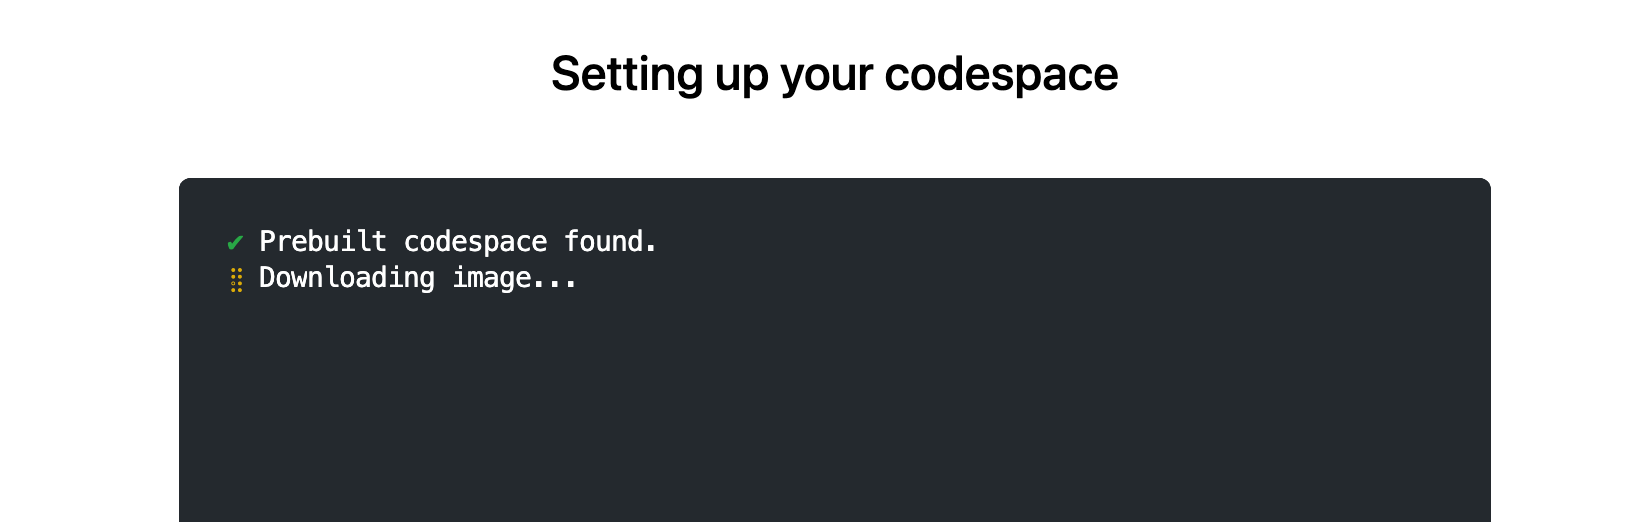 “找到预构建的代码空间”消息